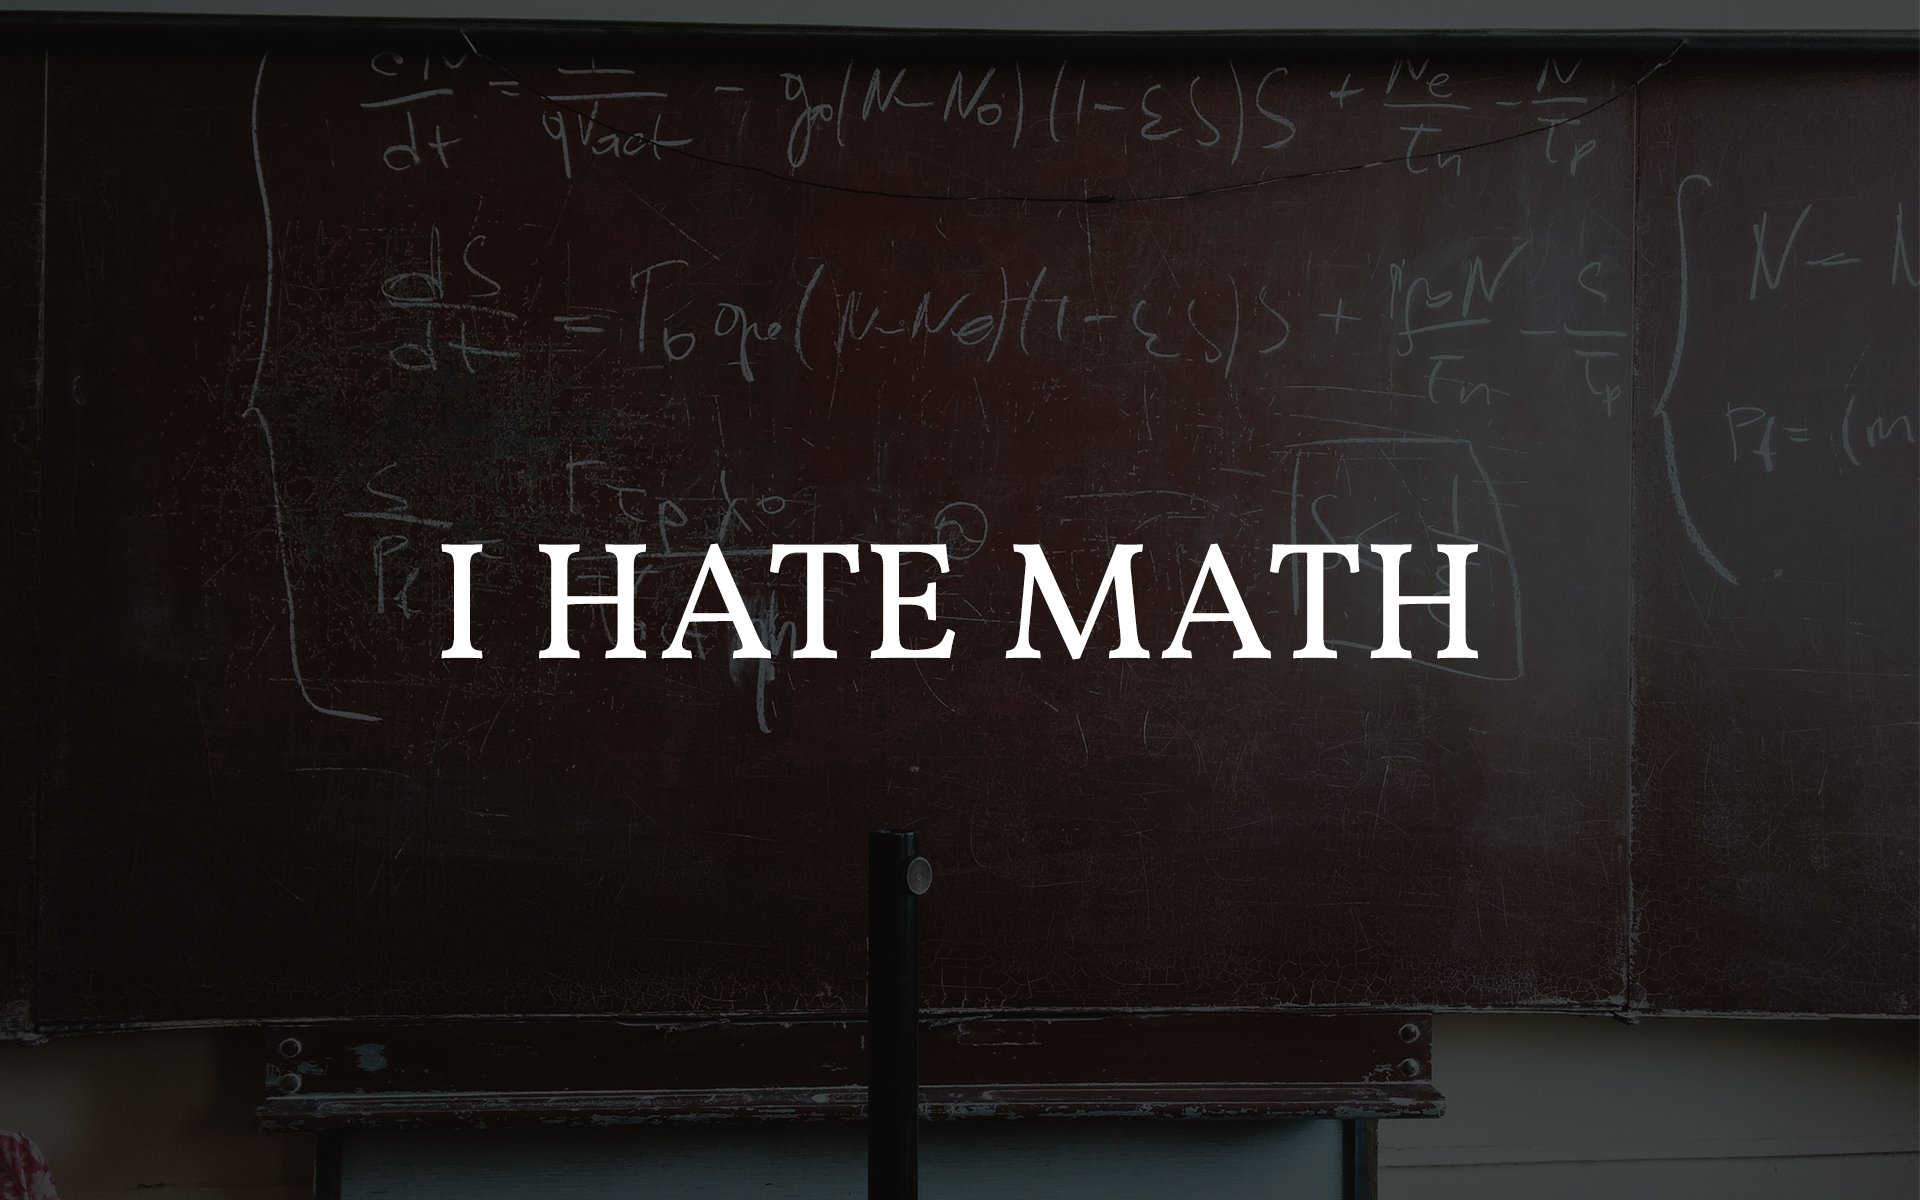 I Hate Math